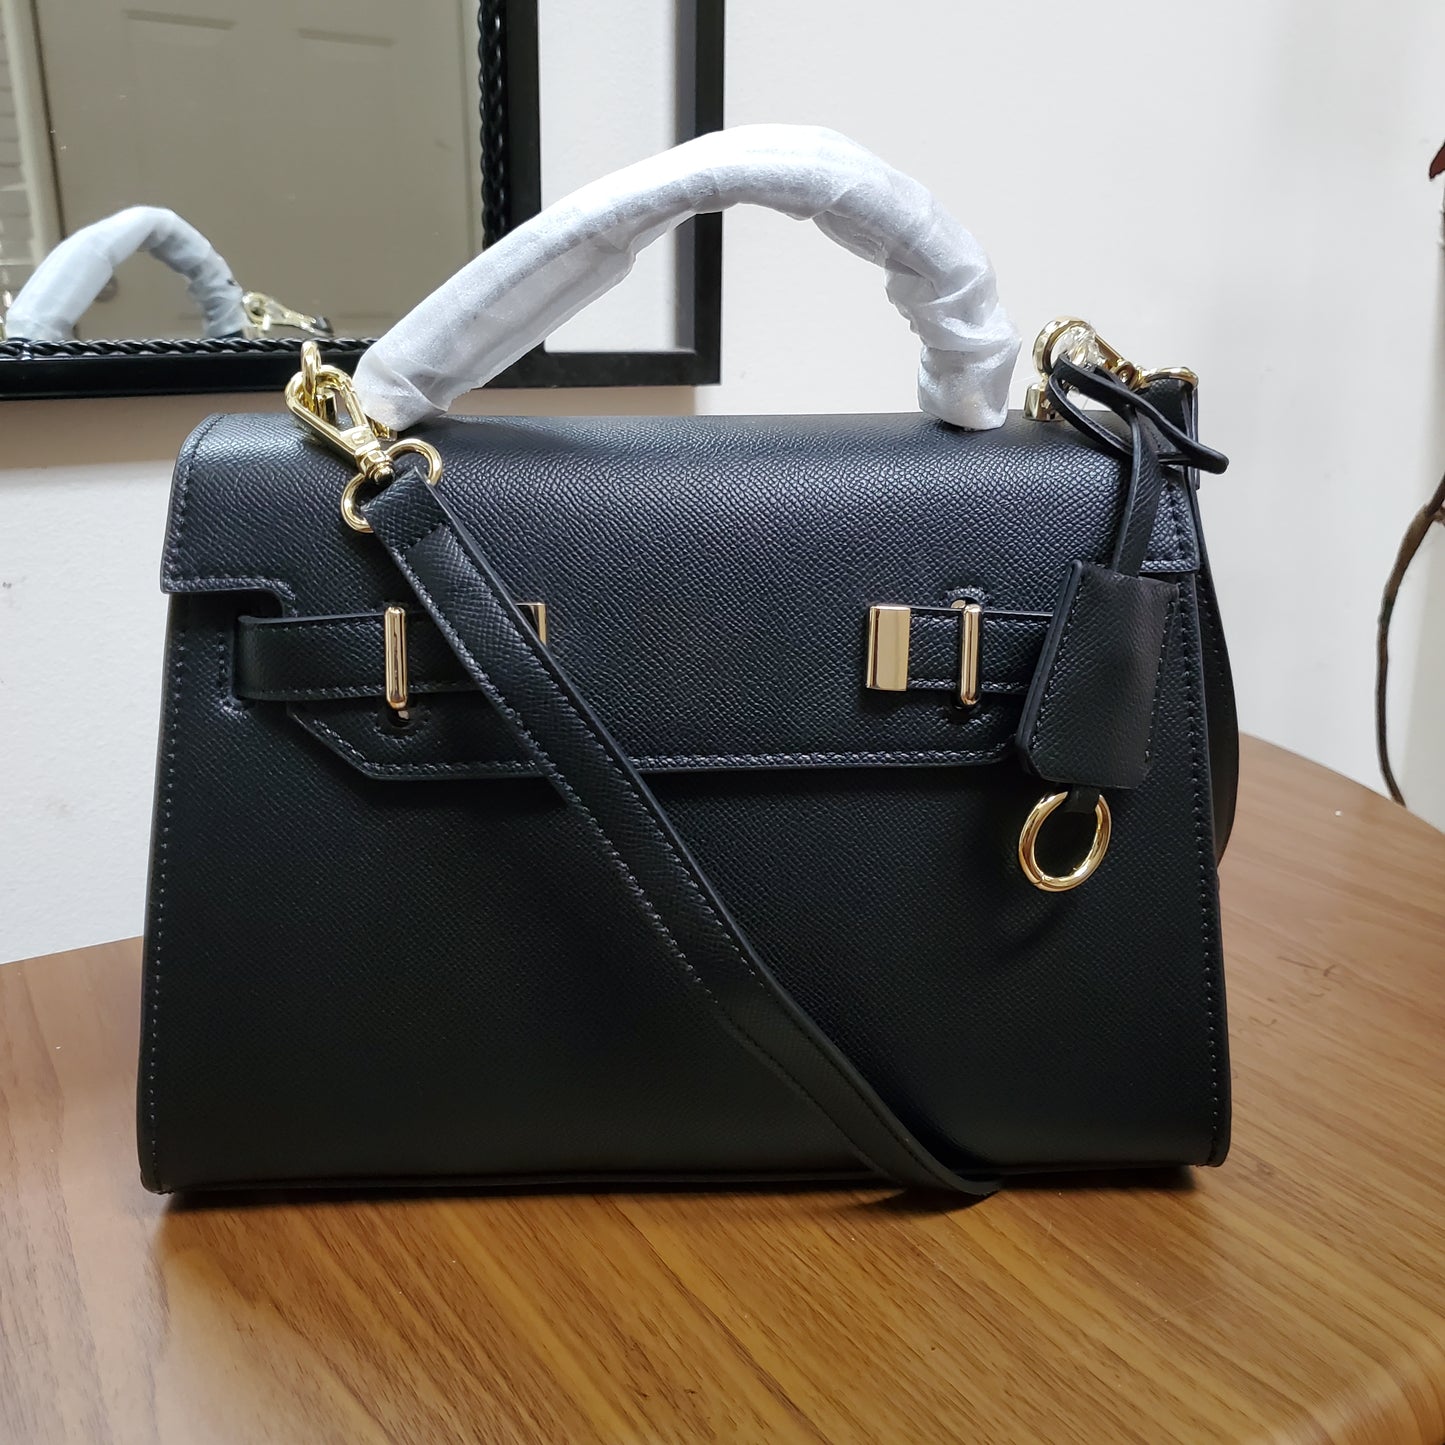 Daisy Classic Suffiano Satchel Handbag - Black